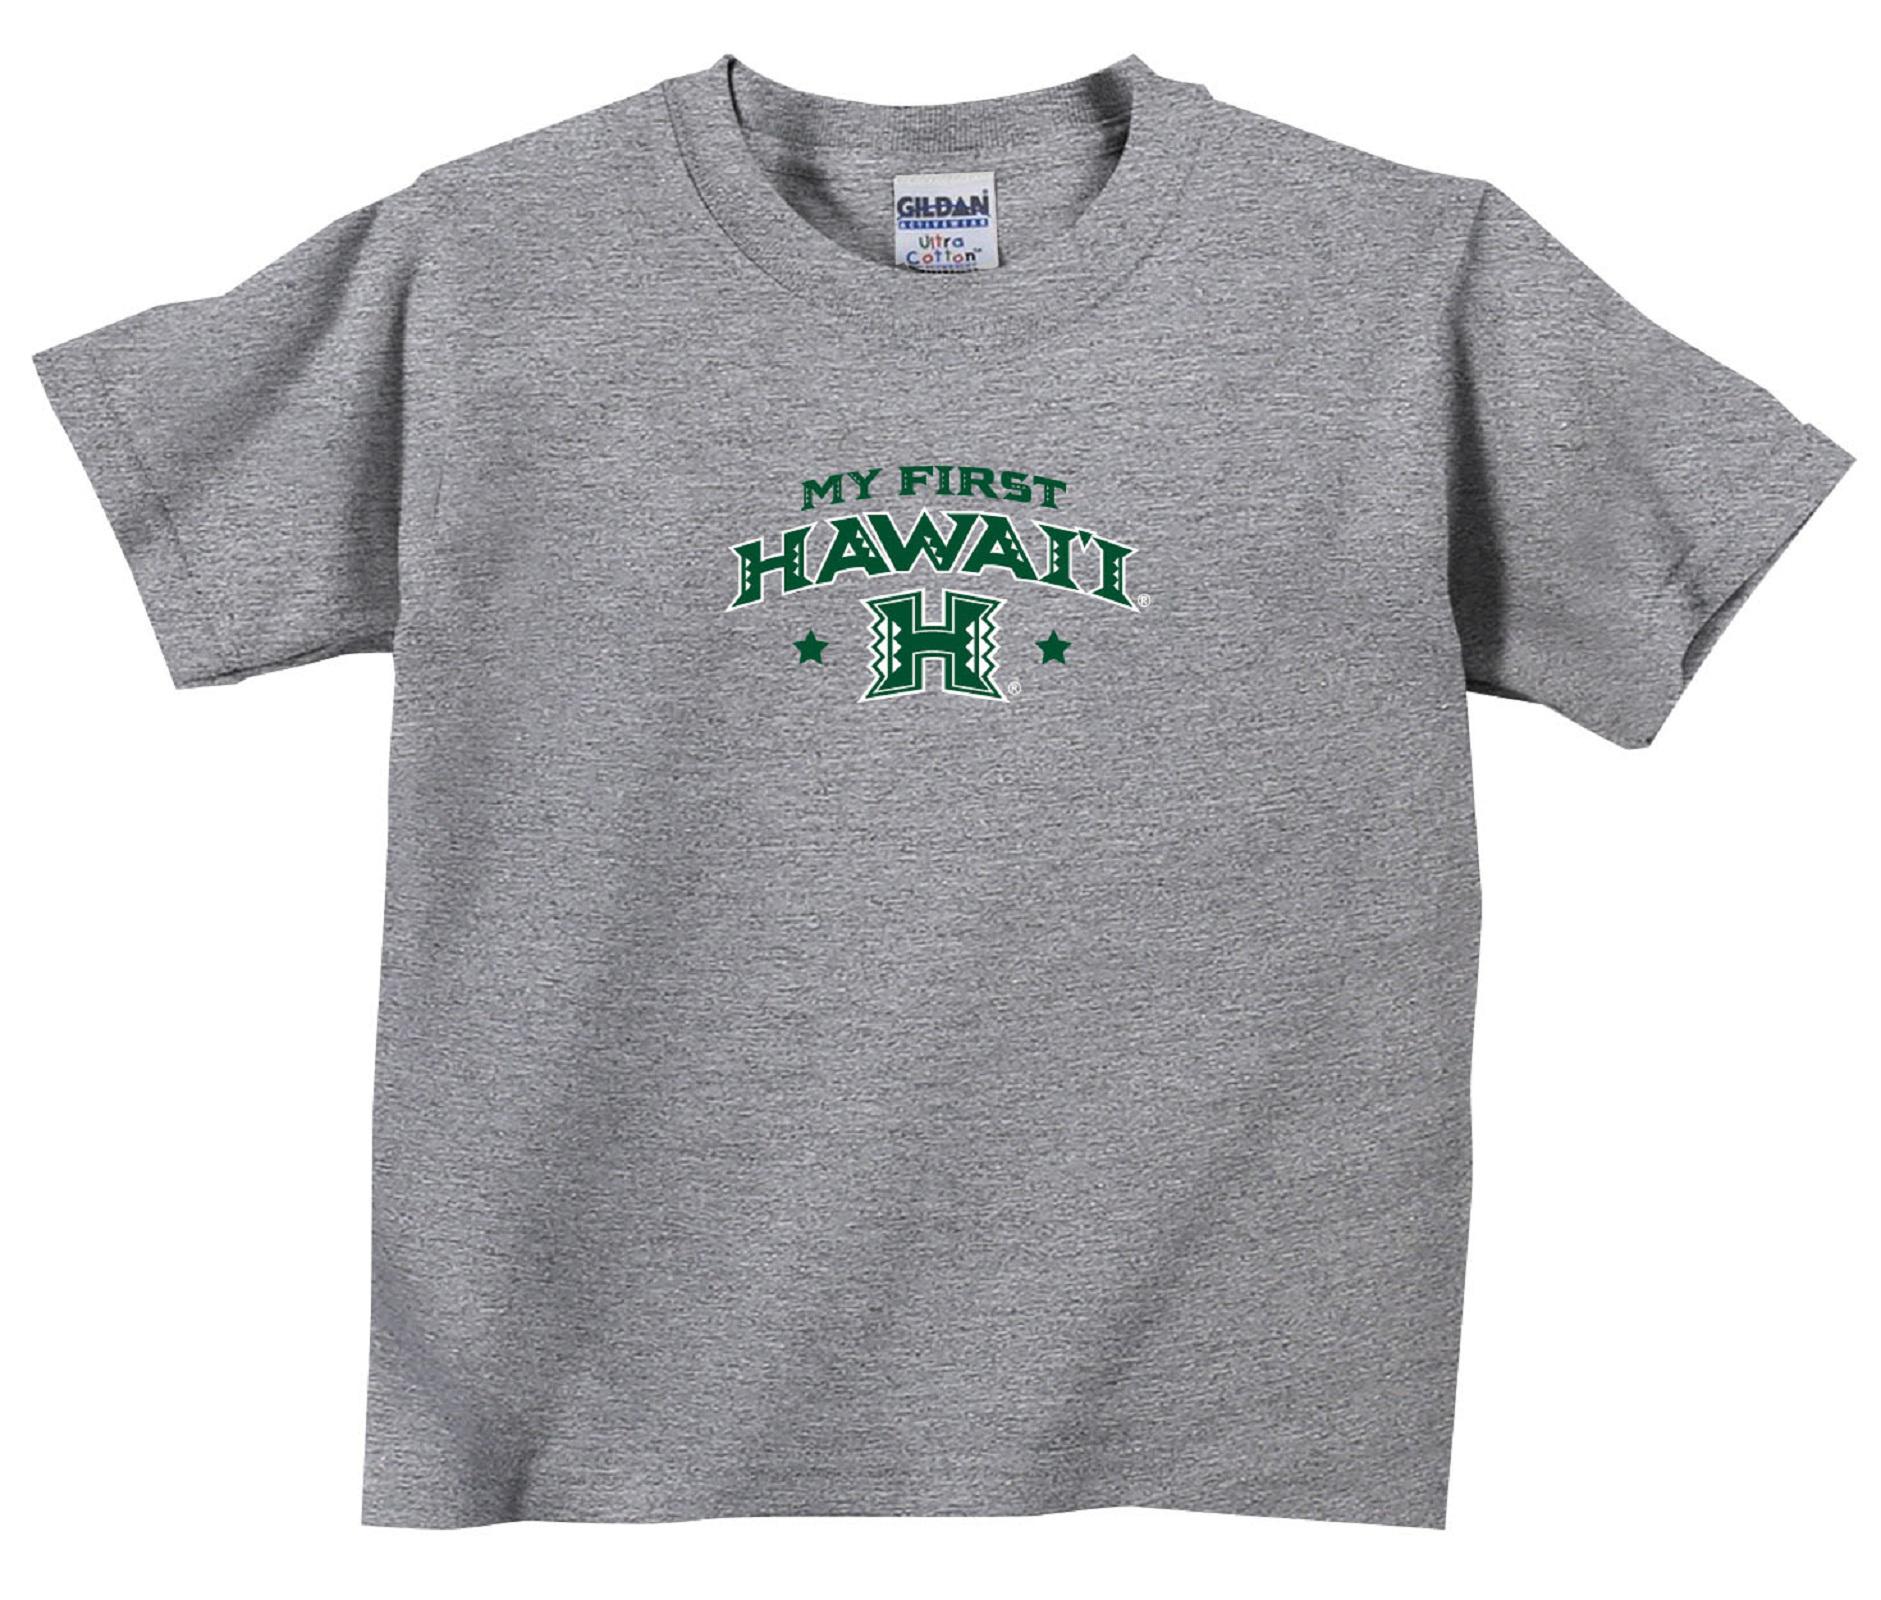 NCAA Toddler Boys' Heathered T-Shirt - Hawaii Rainbow Warriors